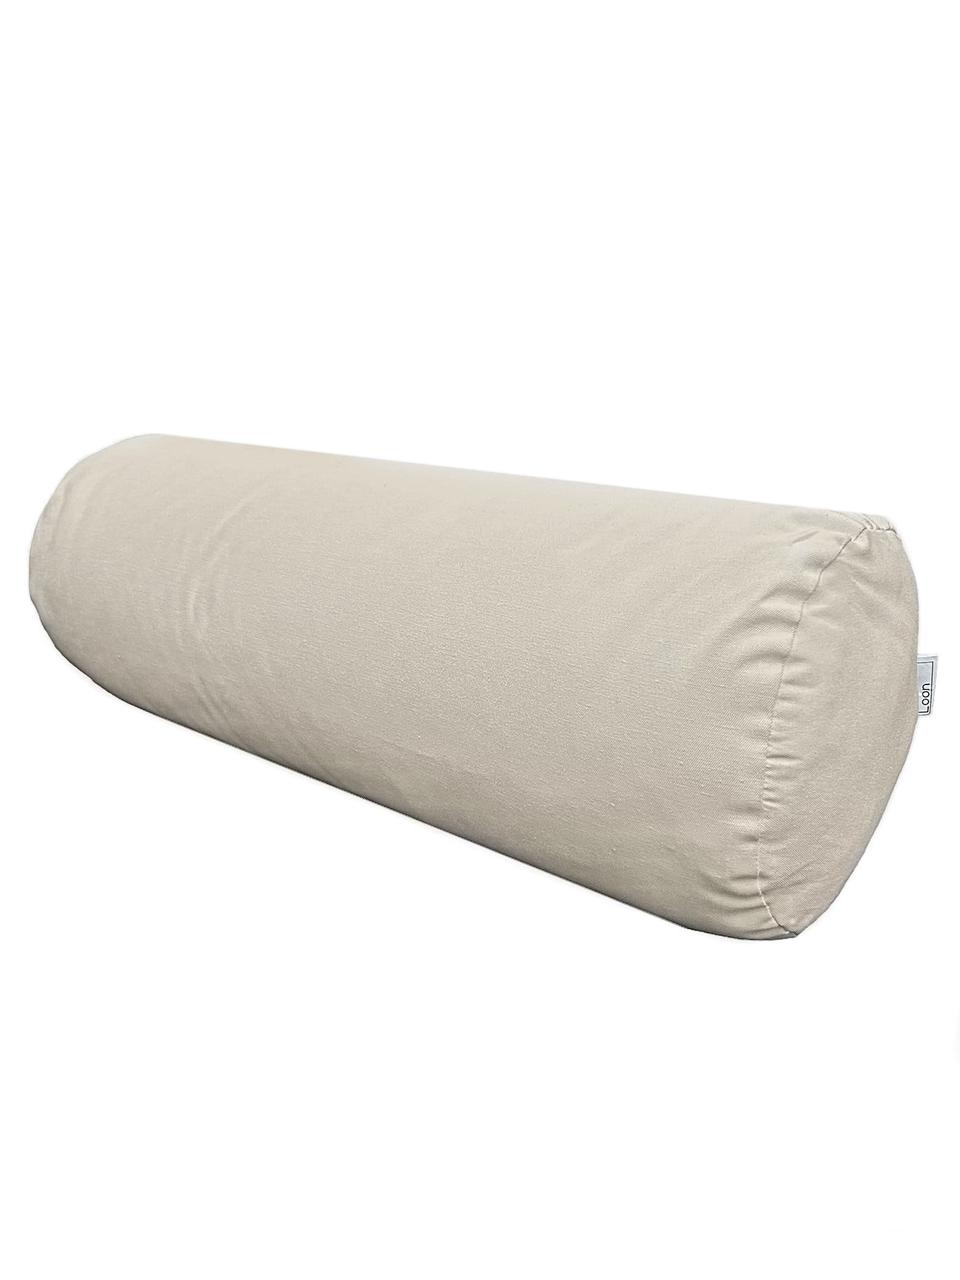 Подушка для садовой мебели Пайп